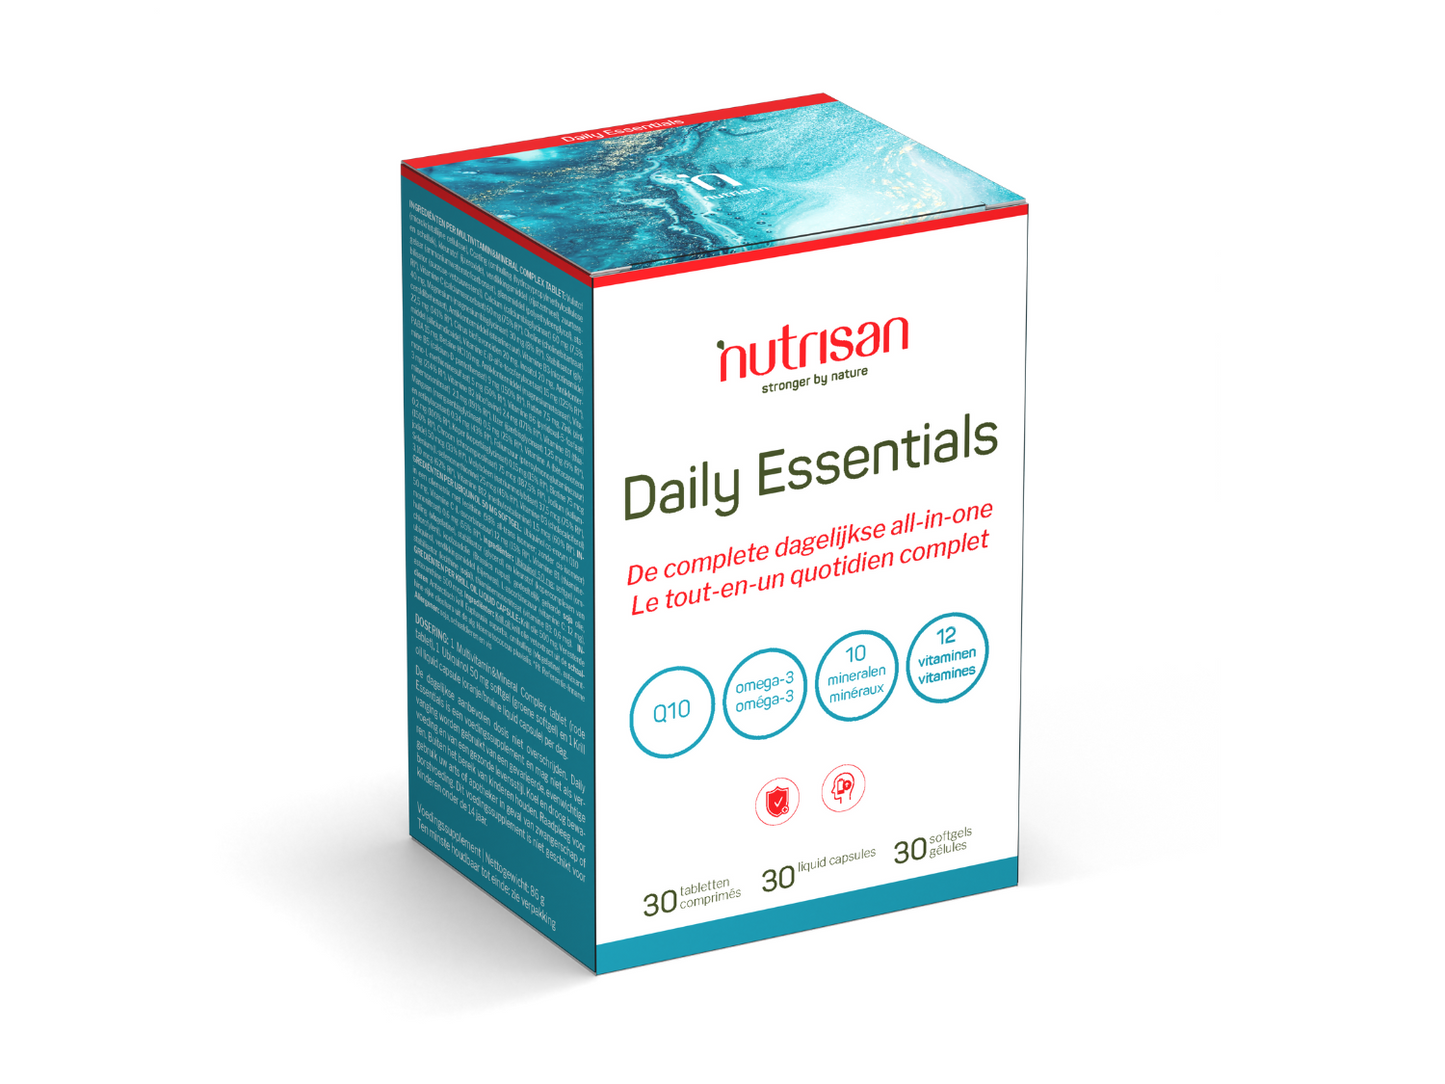 Nutrisan Daily Essentials - 90 capsules - De complete dagelijkse all-in-one